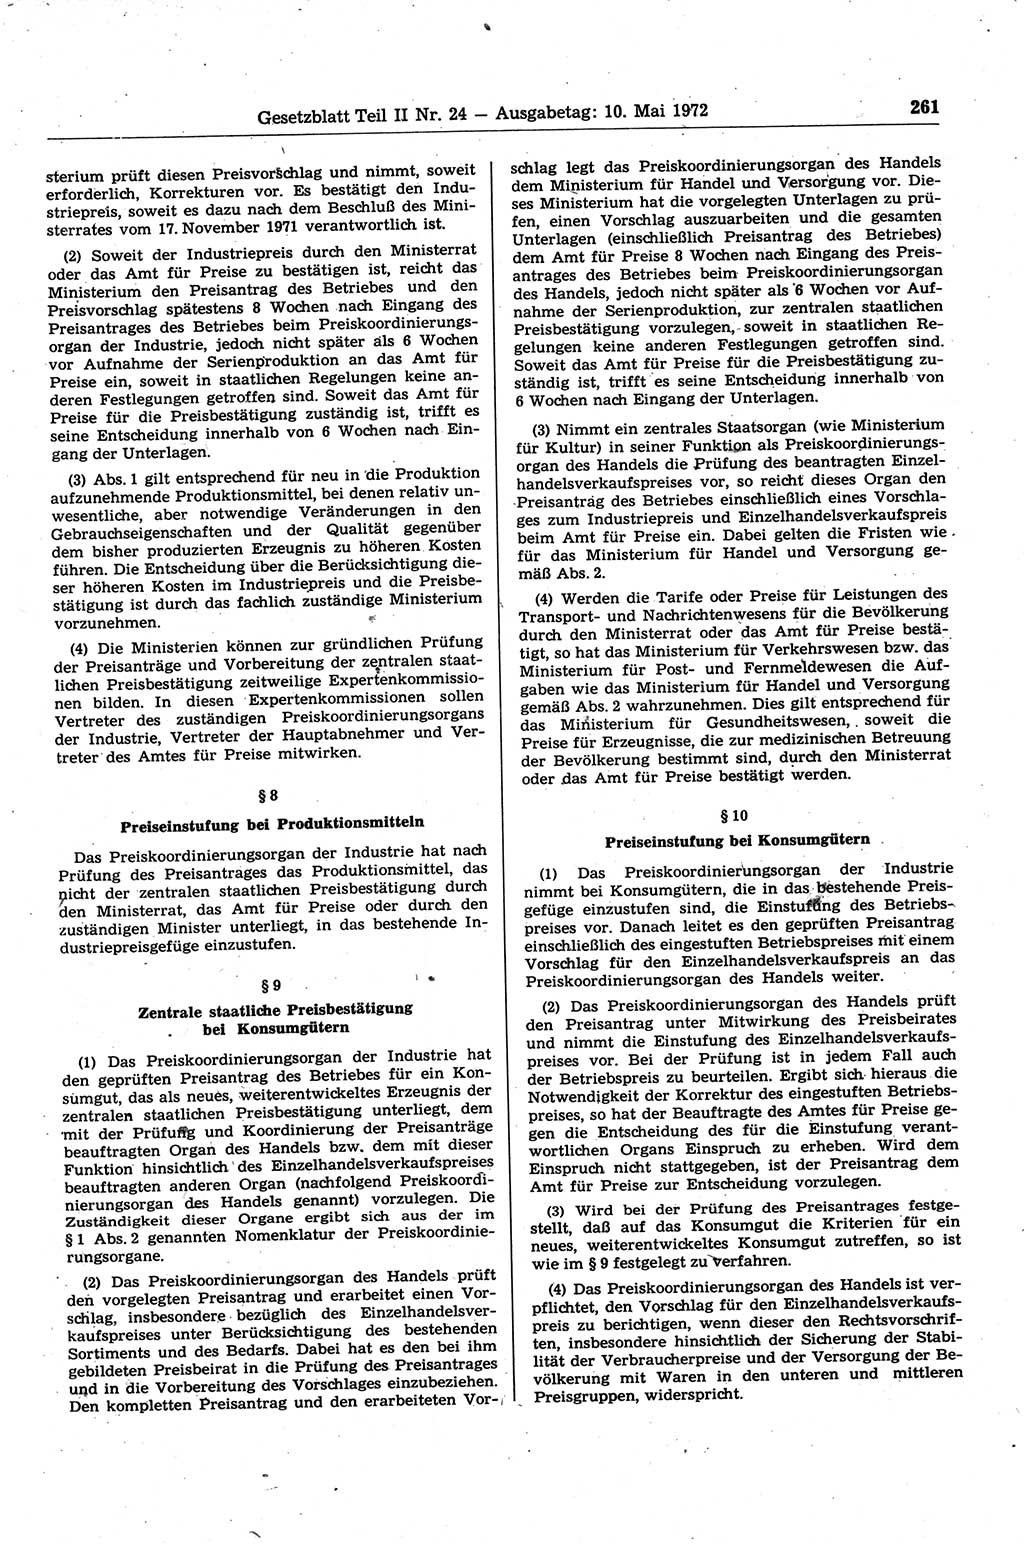 Gesetzblatt (GBl.) der Deutschen Demokratischen Republik (DDR) Teil ⅠⅠ 1972, Seite 261 (GBl. DDR ⅠⅠ 1972, S. 261)